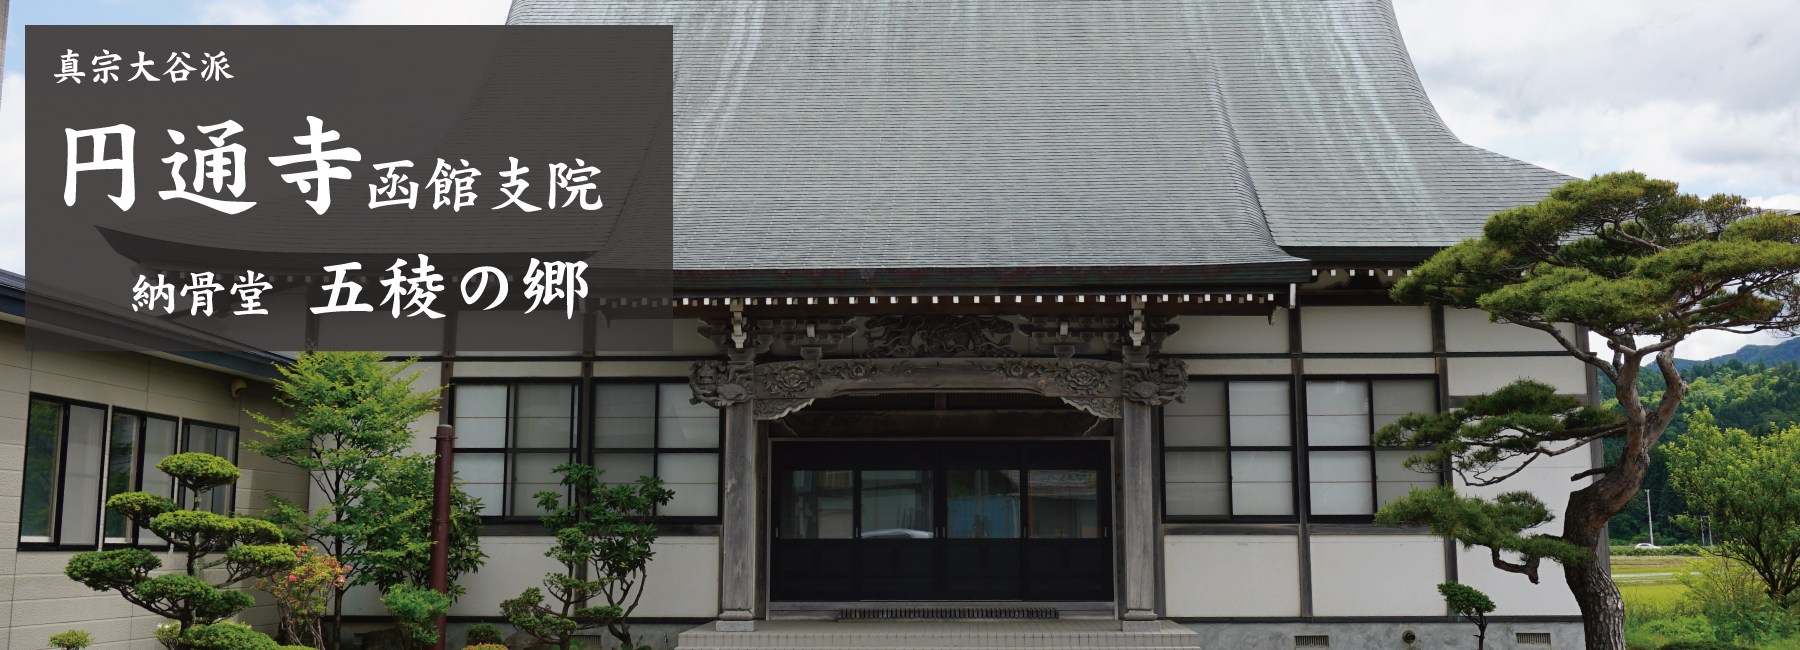 円通寺函館支院の納骨堂は道南初の屋内墓石型の納骨堂です